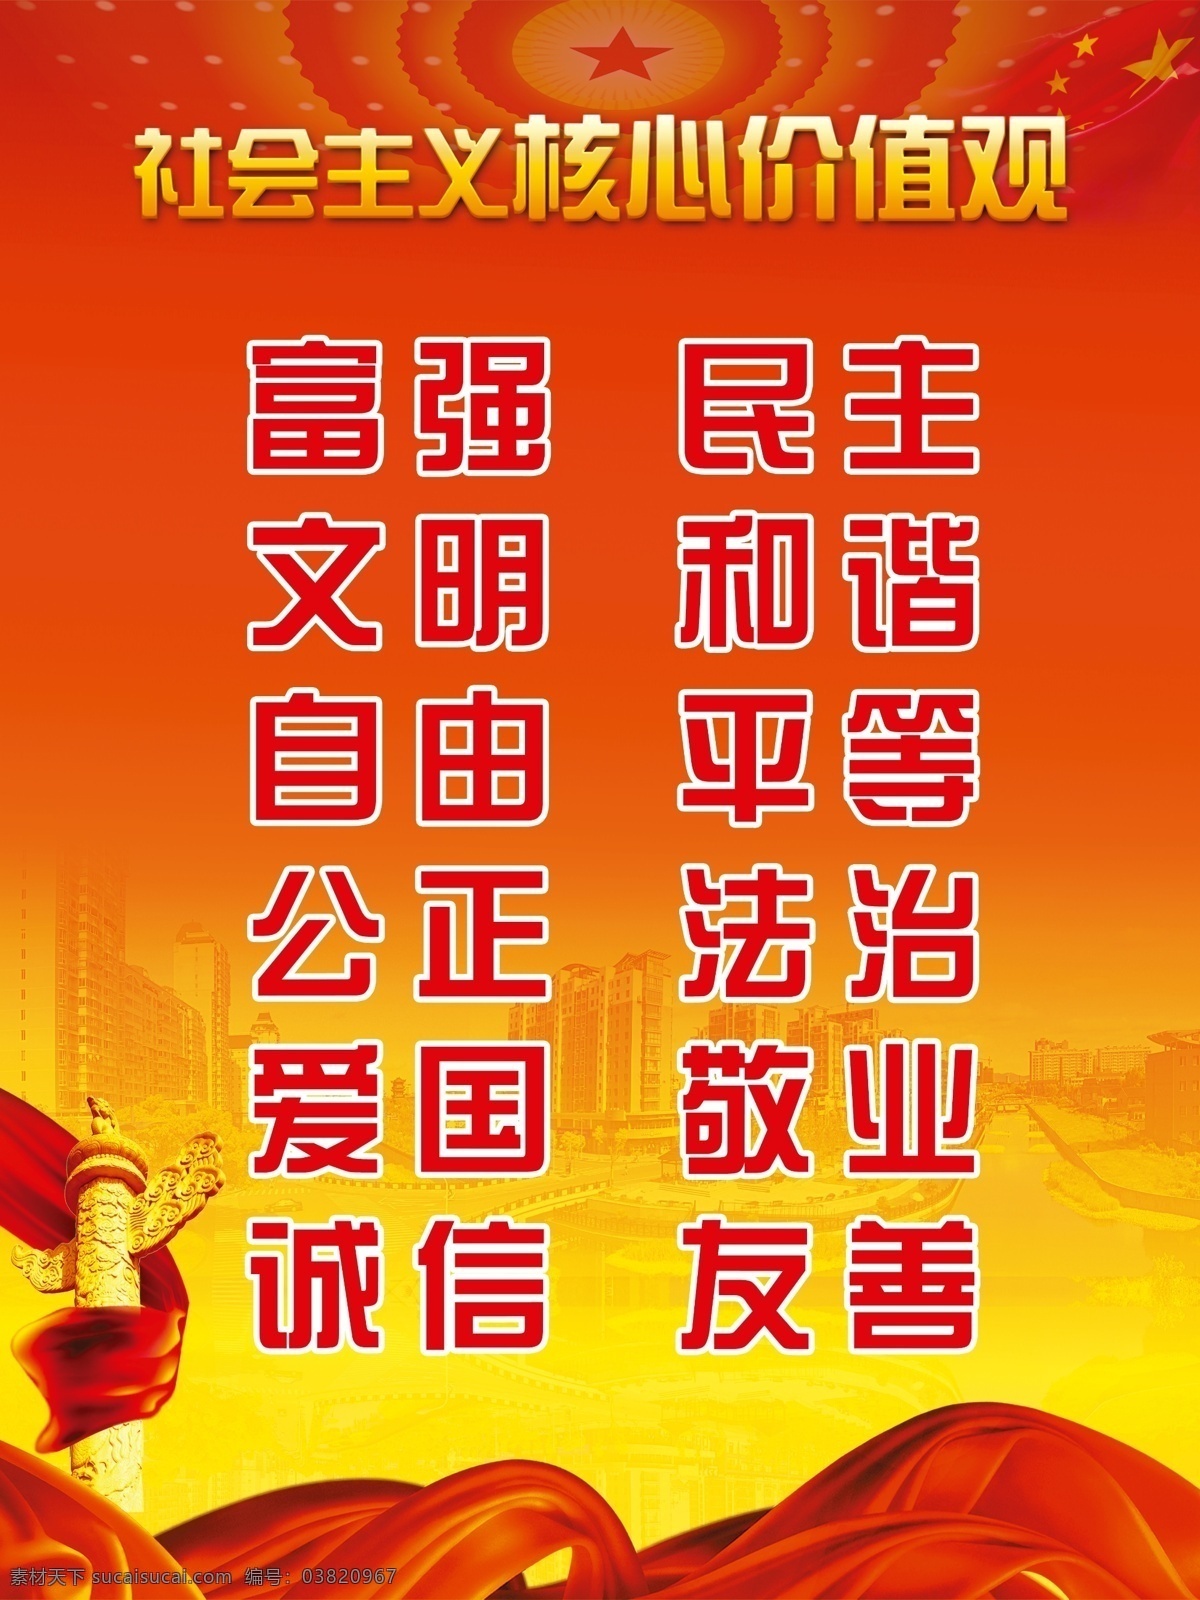 富强 社会主义 核心 价值观 民主 中国元素 红旗 华表 红色背景